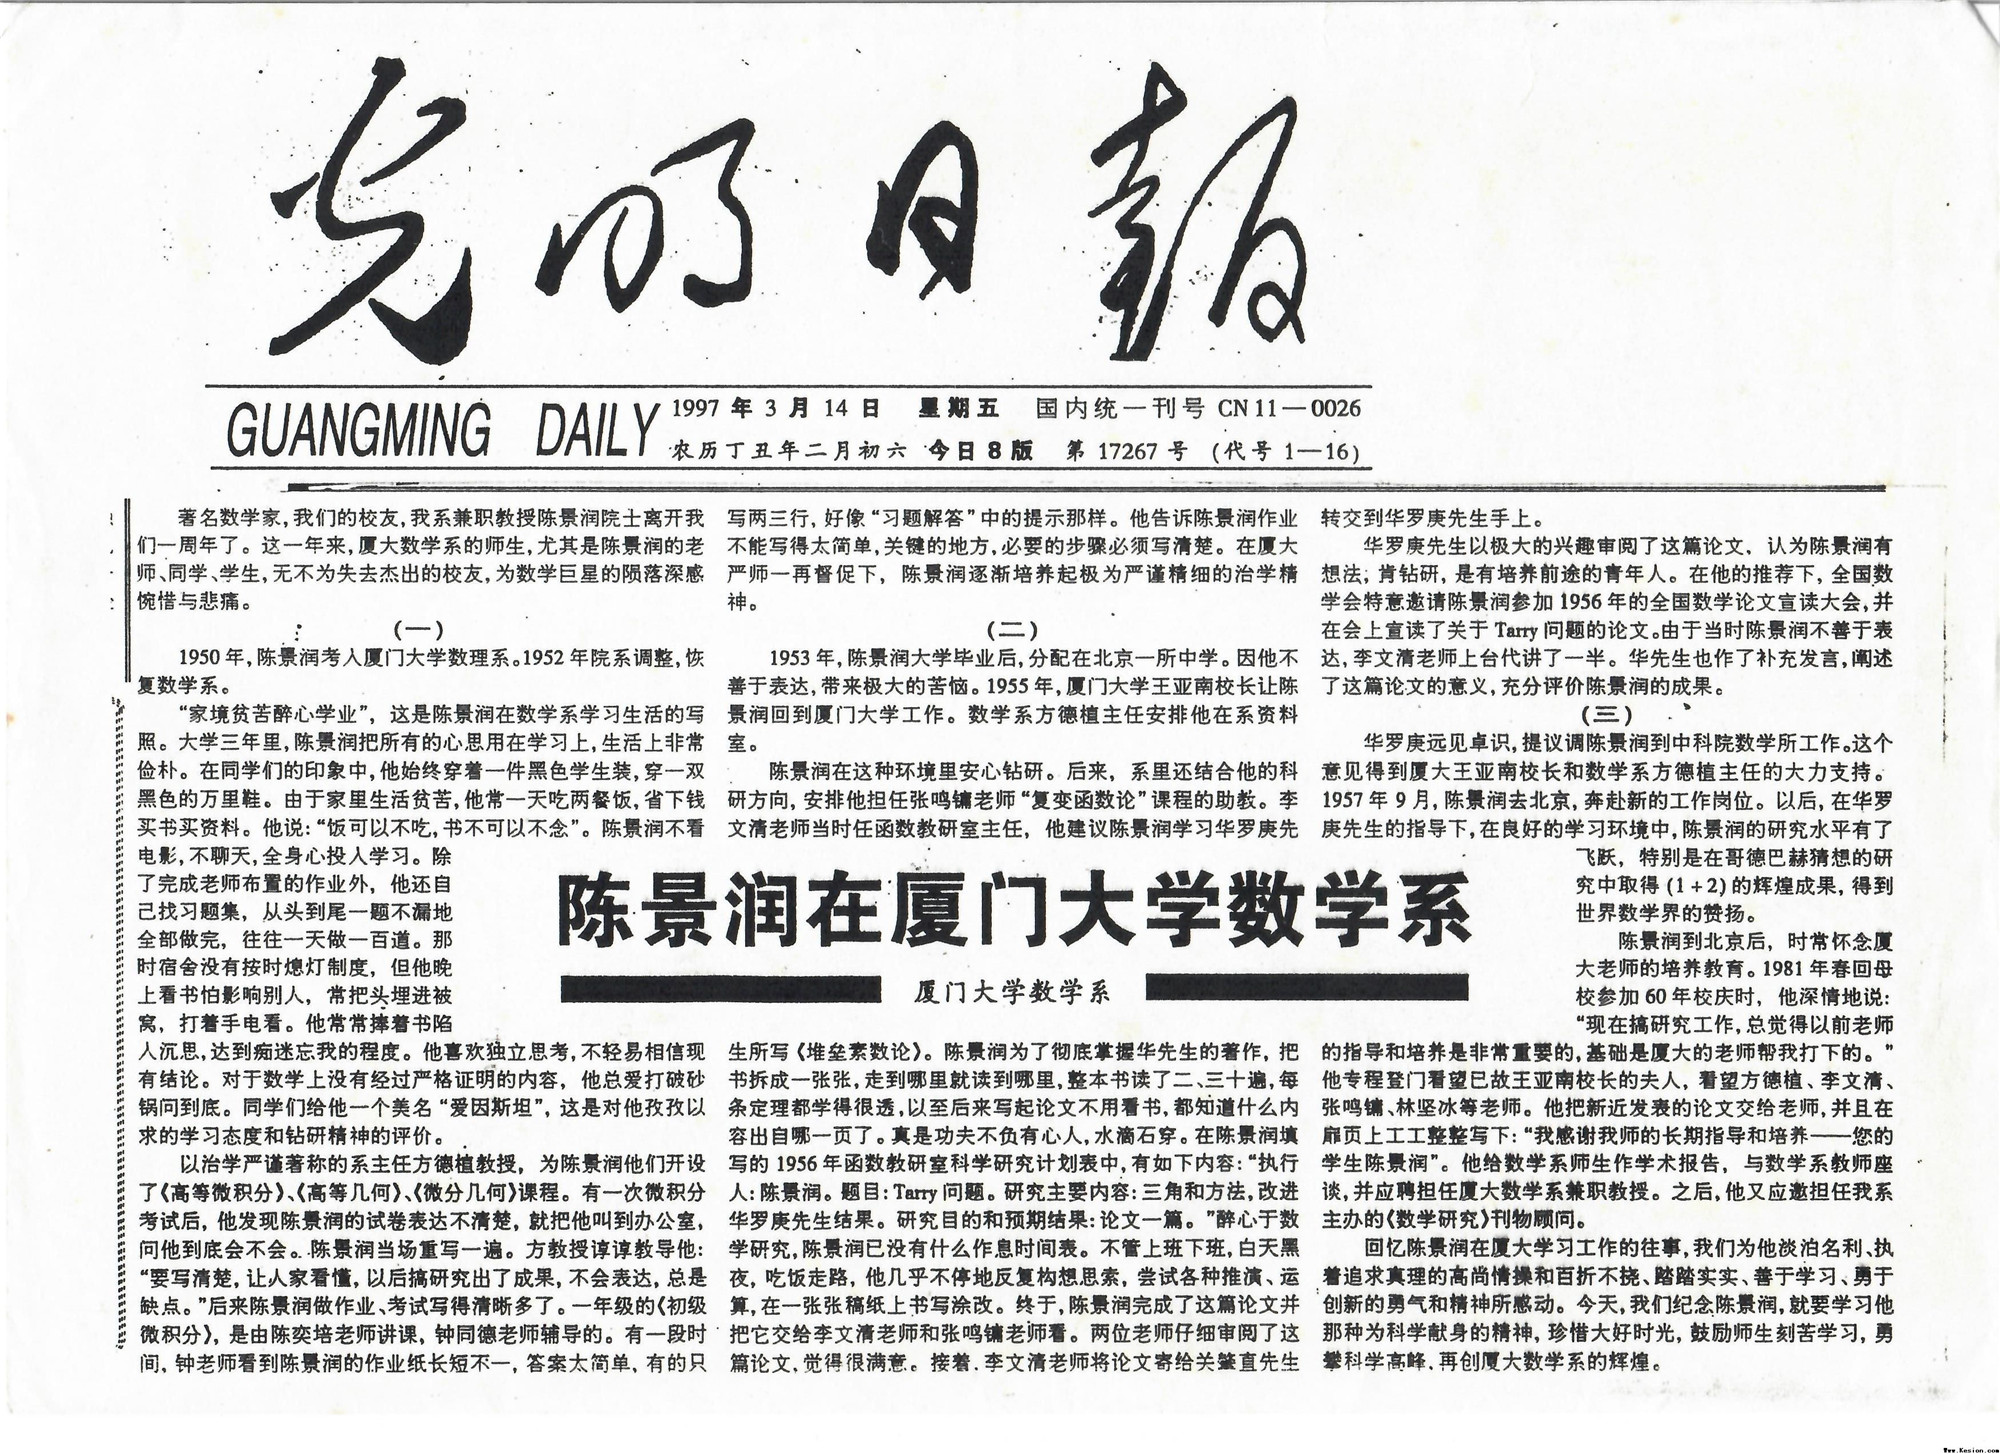 1997年3月14日光明日报刊发《陈景润在厦门大学数学系》